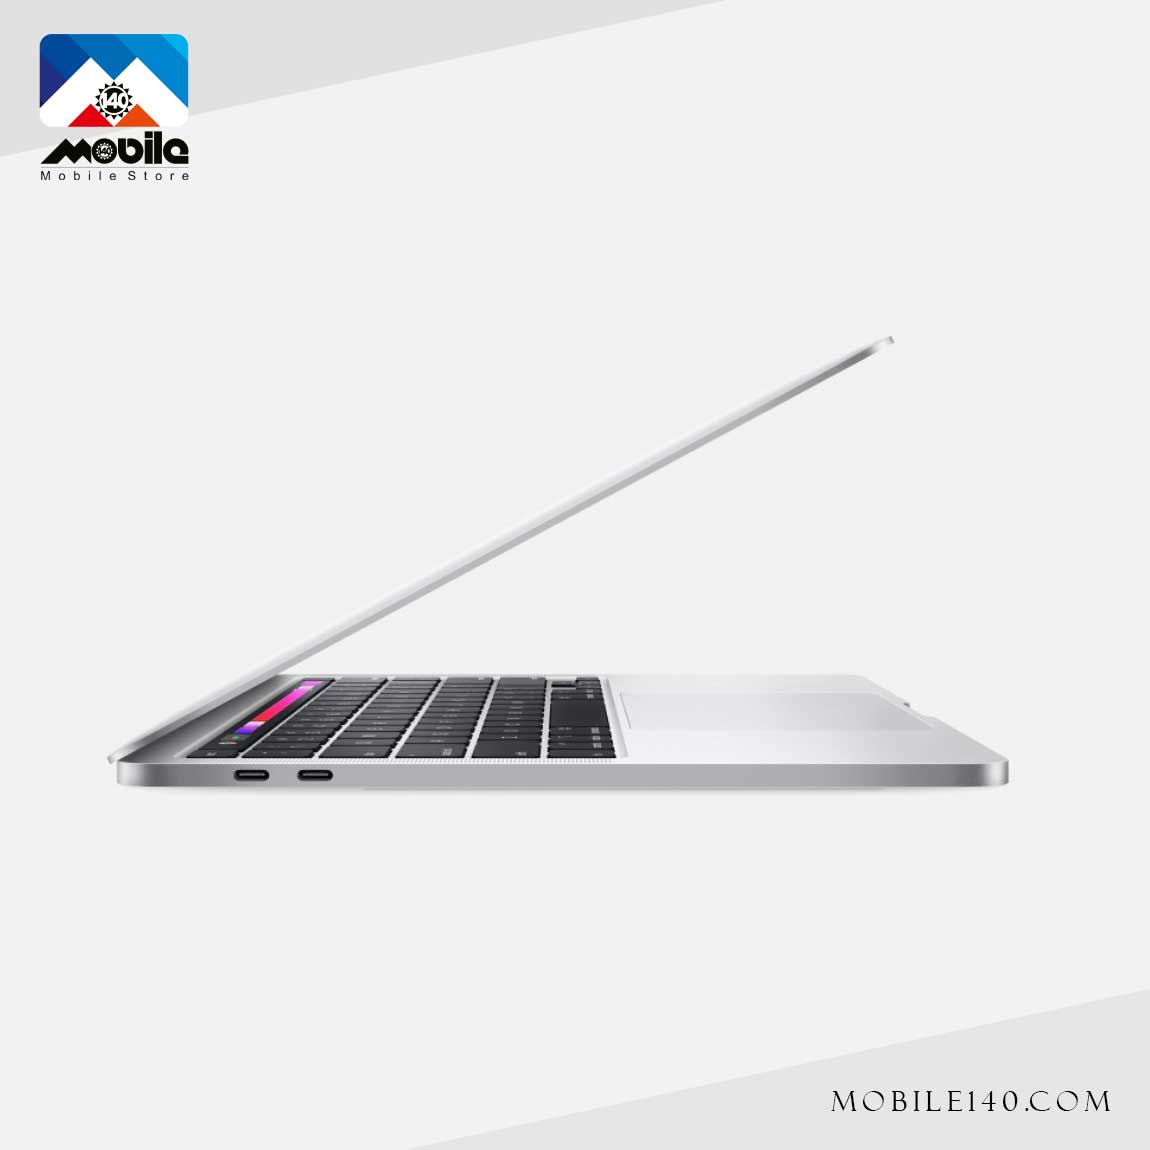 MacBook Pro MYDC2 2020 3